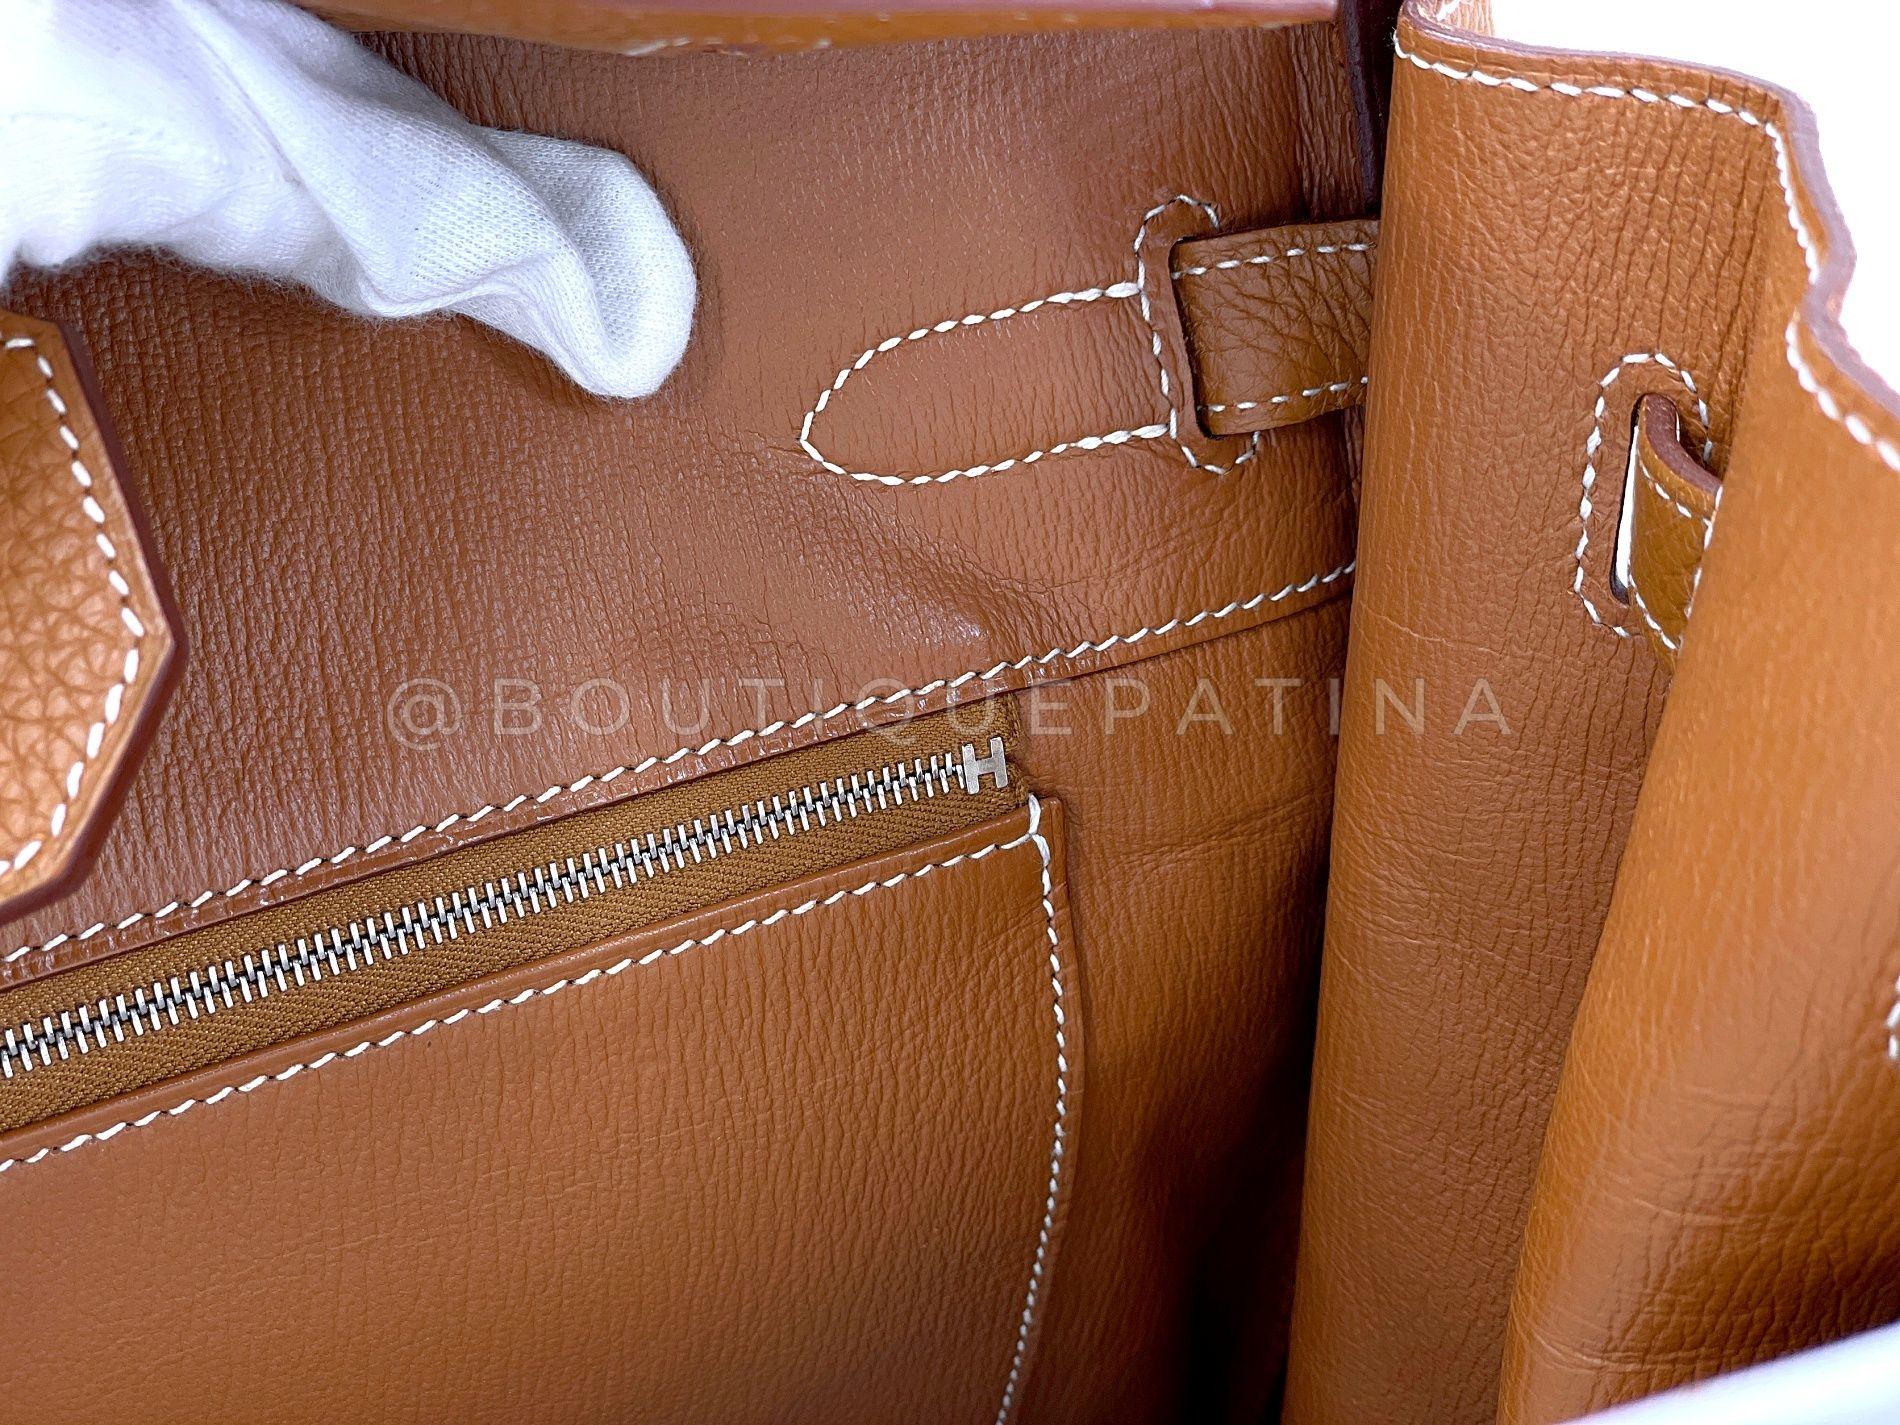 Hermès Gold Togo Birkin Tote Bag 35cm PHW Camel Brown 68060 For Sale 15